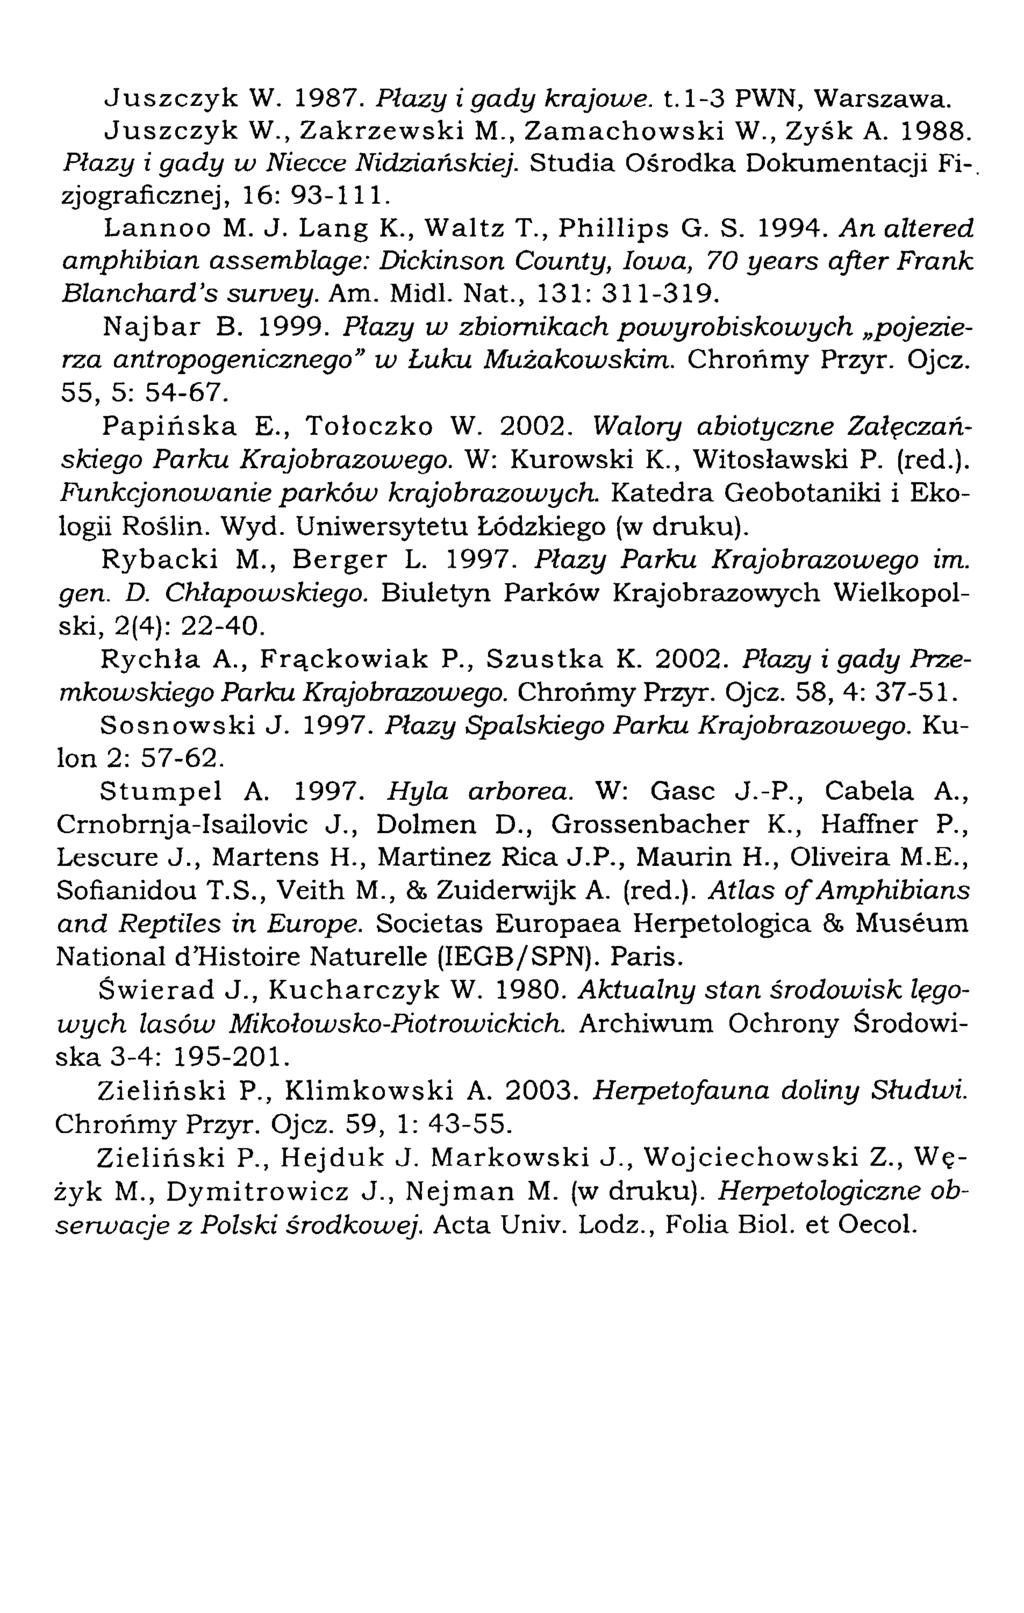 Juszczyk W. 1987. Płazy i gady krajowe. 1.1-3 PWN, Warszawa. Juszczyk W., Zakrzewski M., Zamachowski W., Zysk A. 1988. Płazy i gady w Niecce Nidziańskiej.